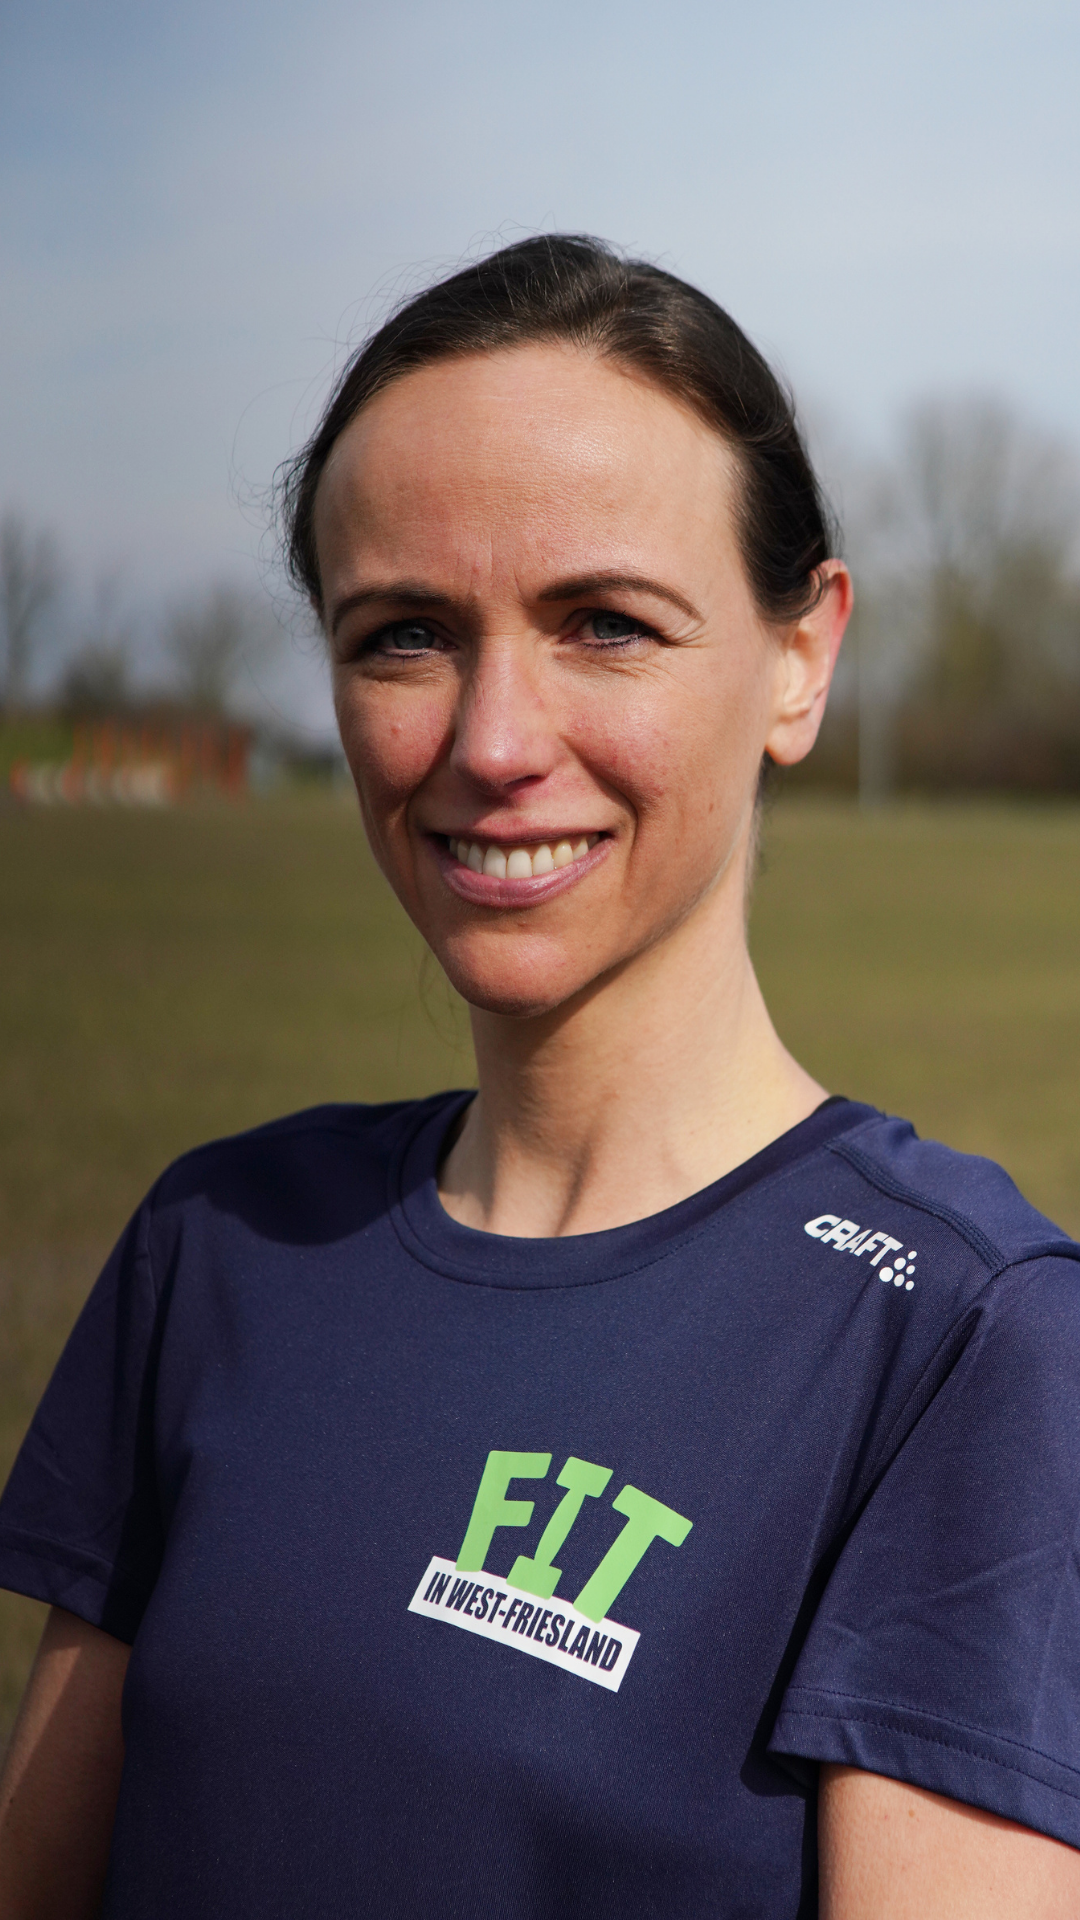 FIT in West-Friesland Eefje Vertelman hardlopen trainer